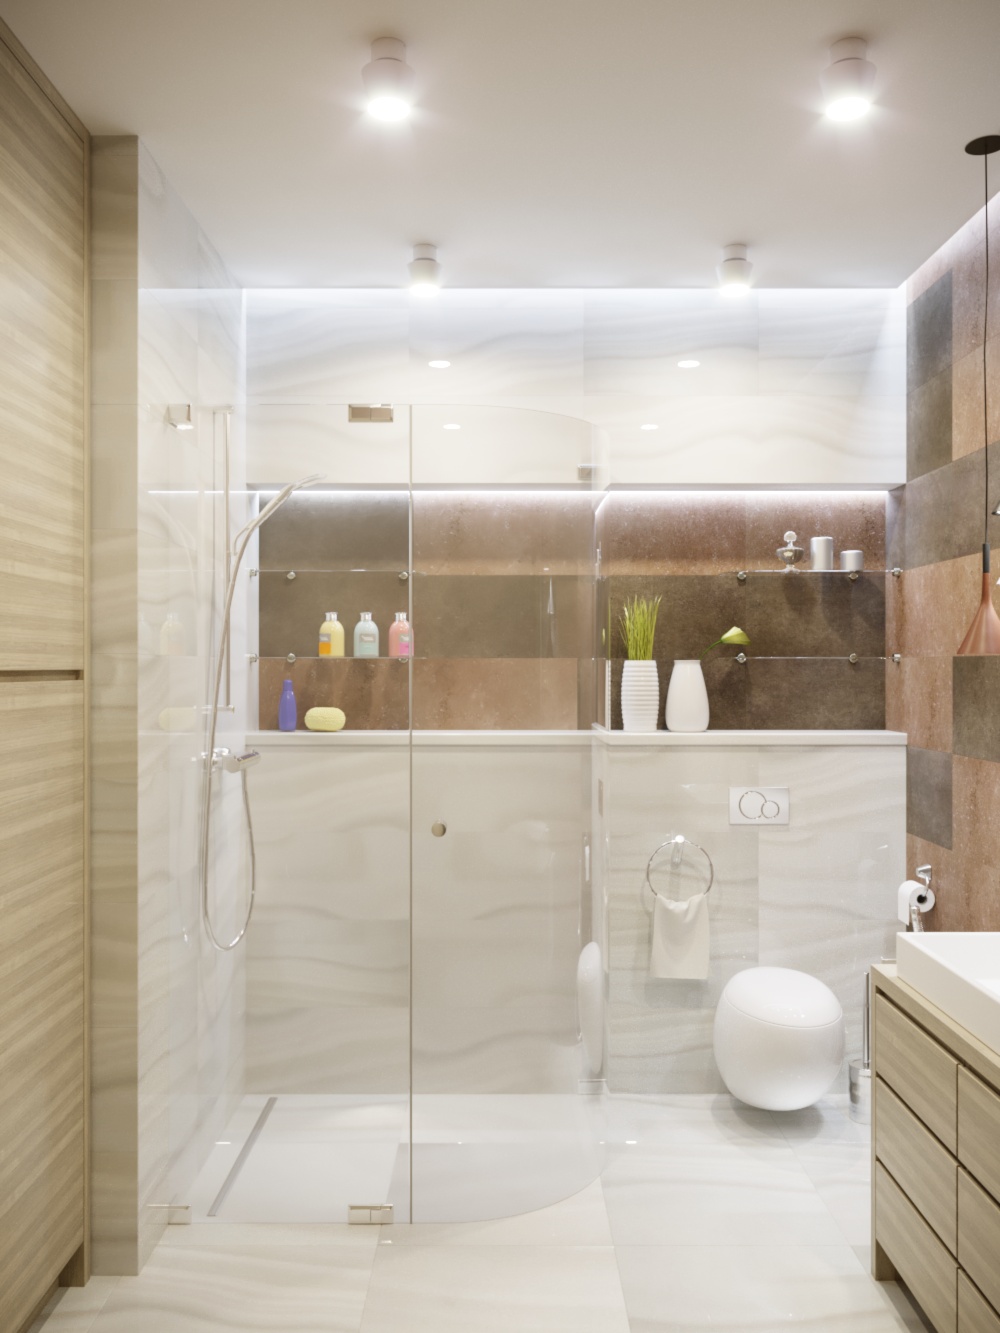 Salle de douche et dressing dans 3d max corona render image